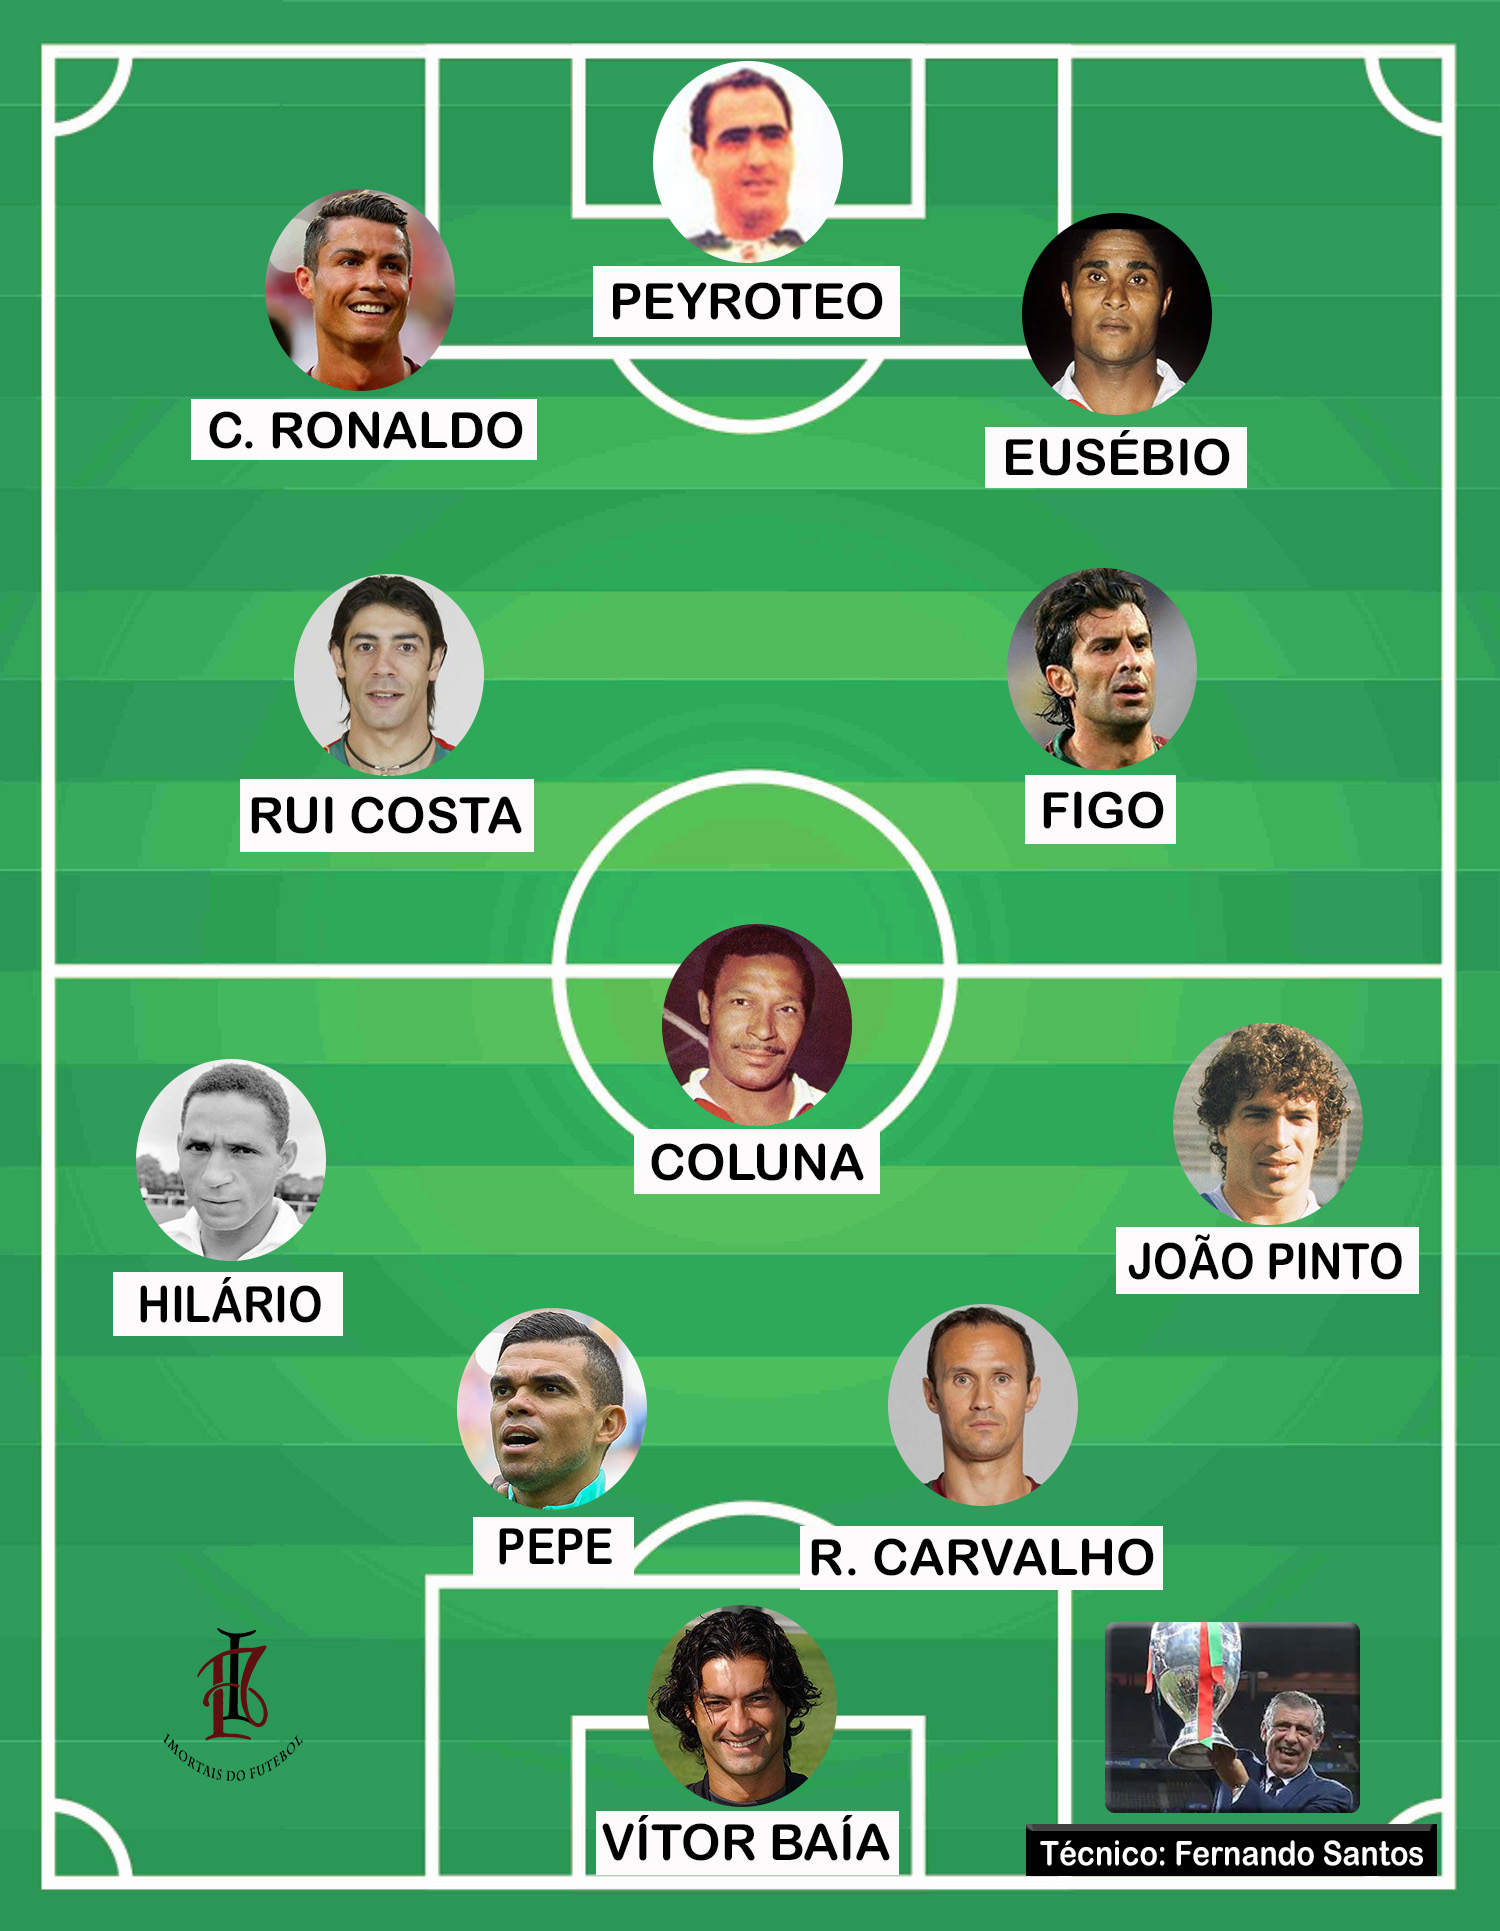 Top 10 melhores jogadores portugueses de todos os tempos